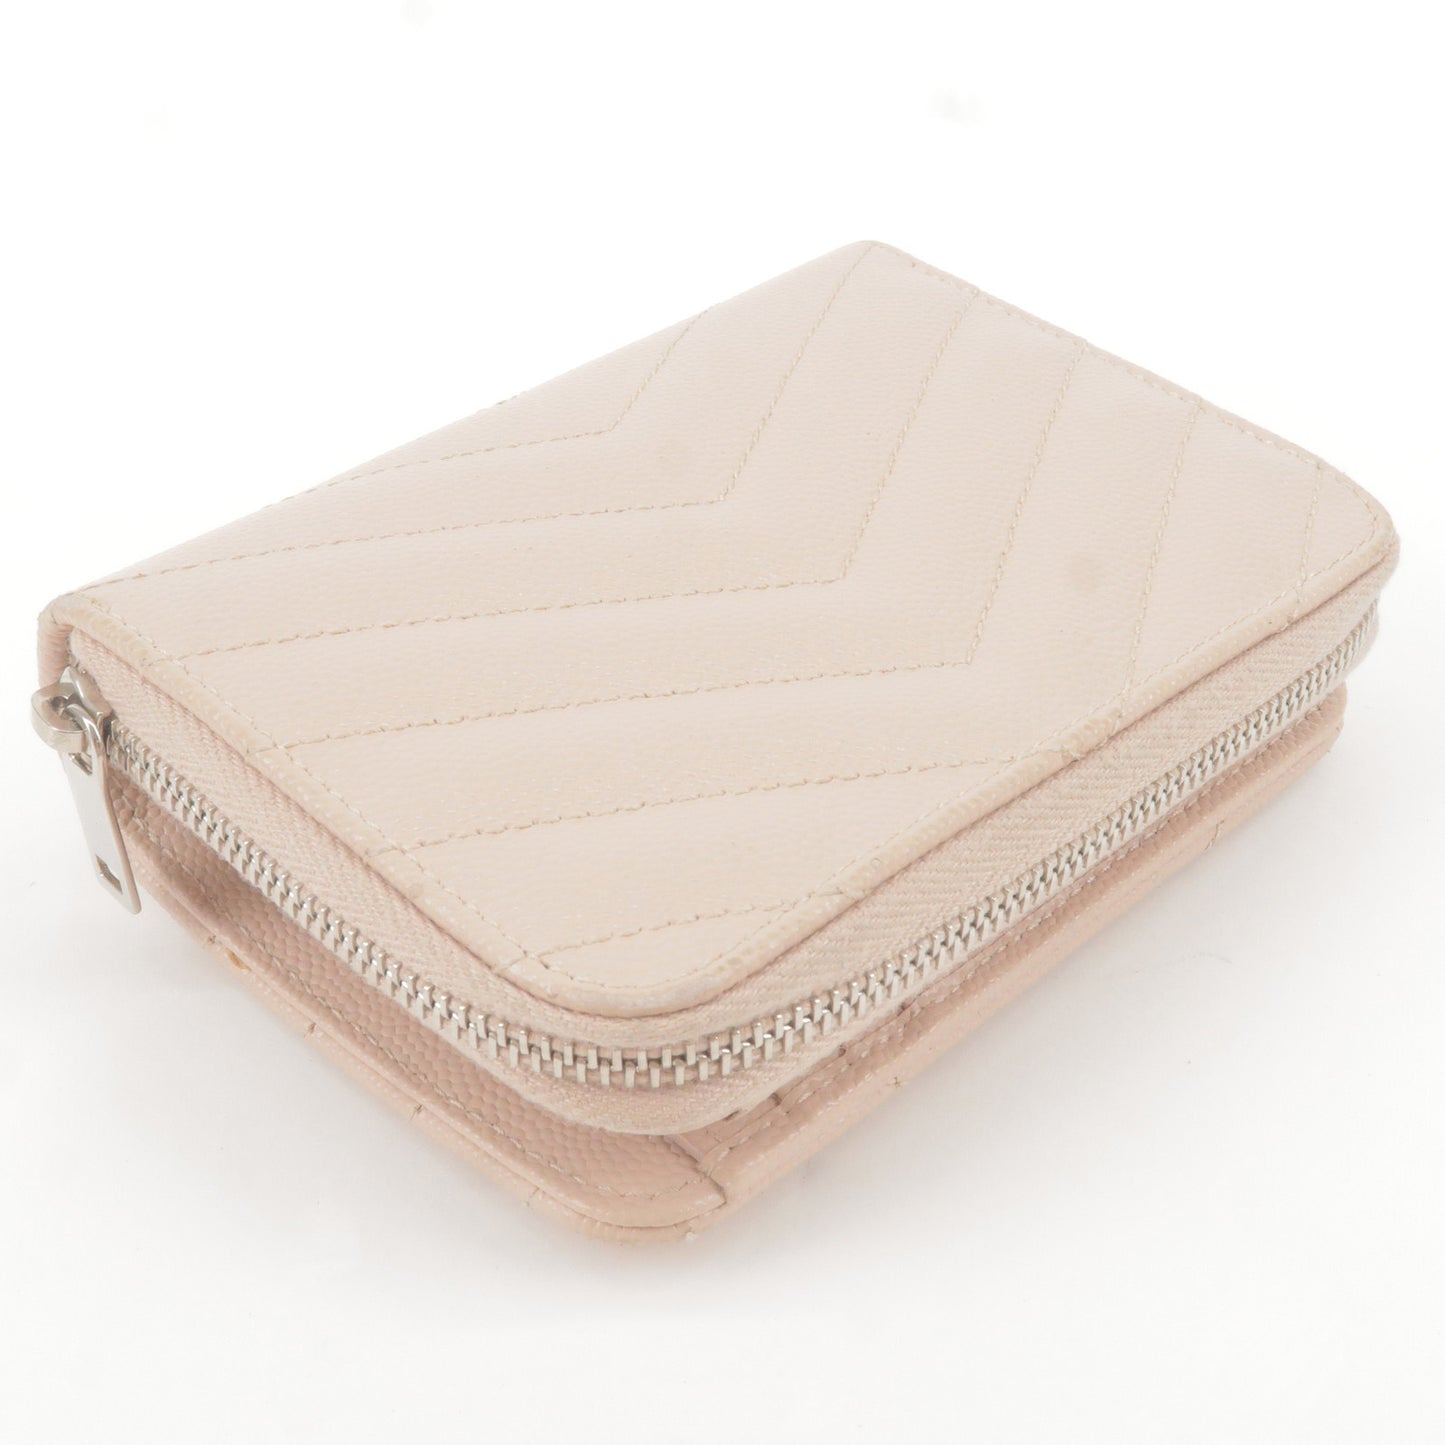 Saint Laurent PARIS YSL Leather Bi-Folded Wallet Beige 403723